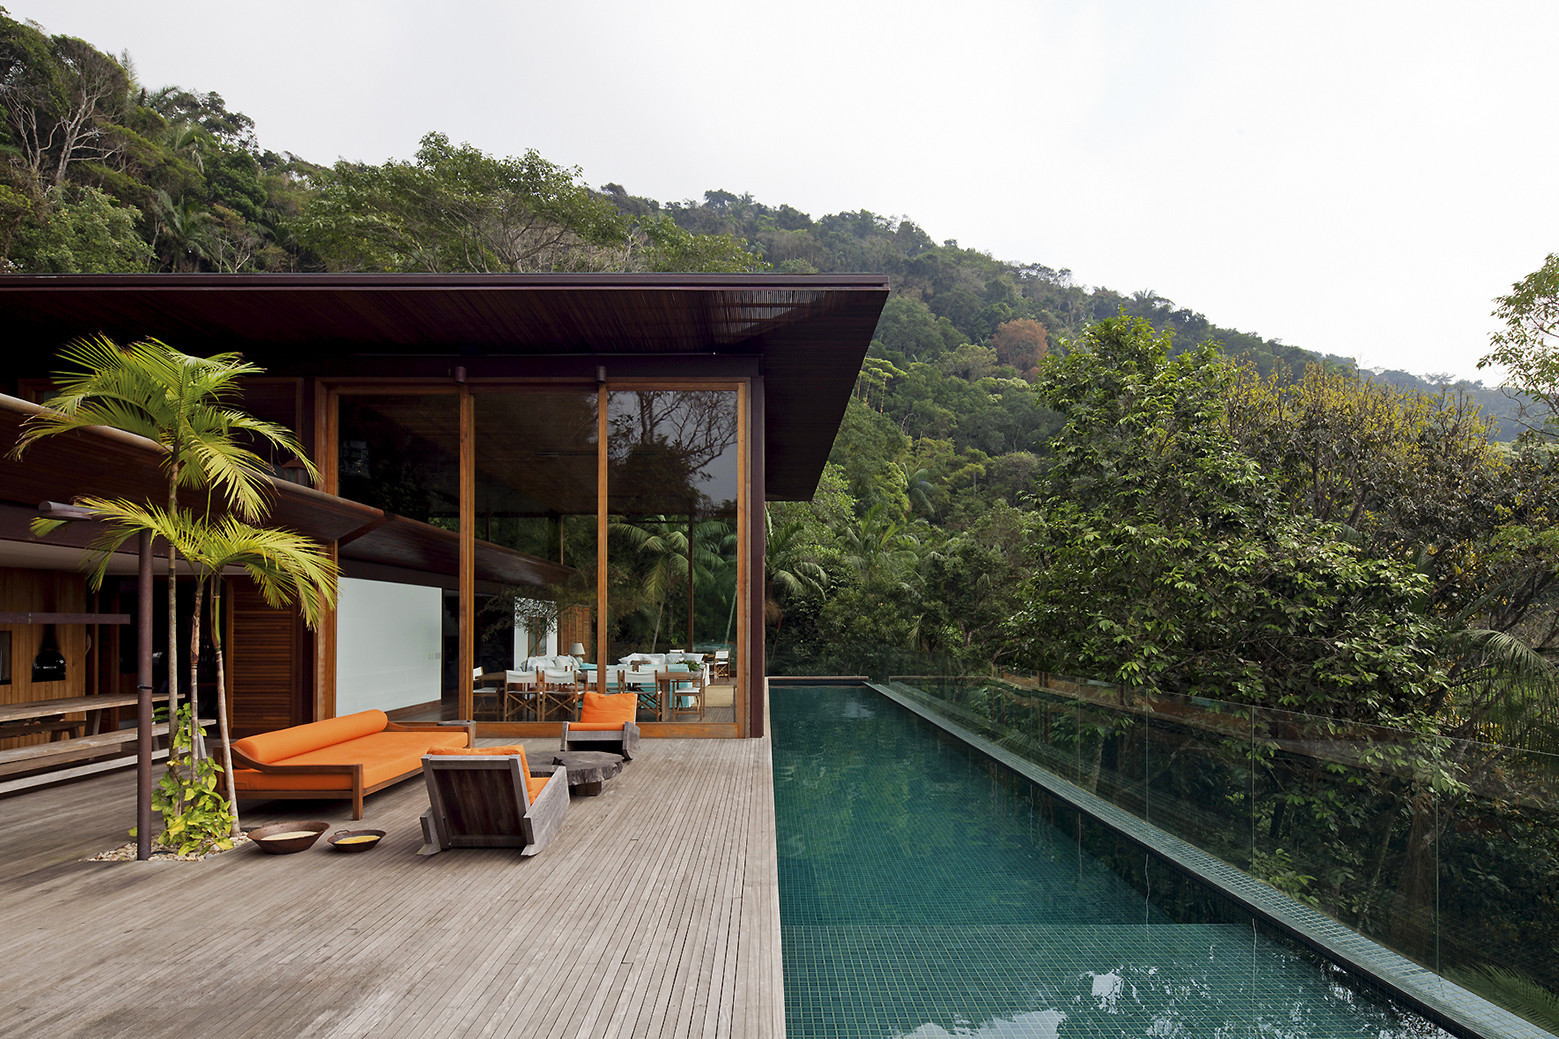 Residence in Brazil rainforest